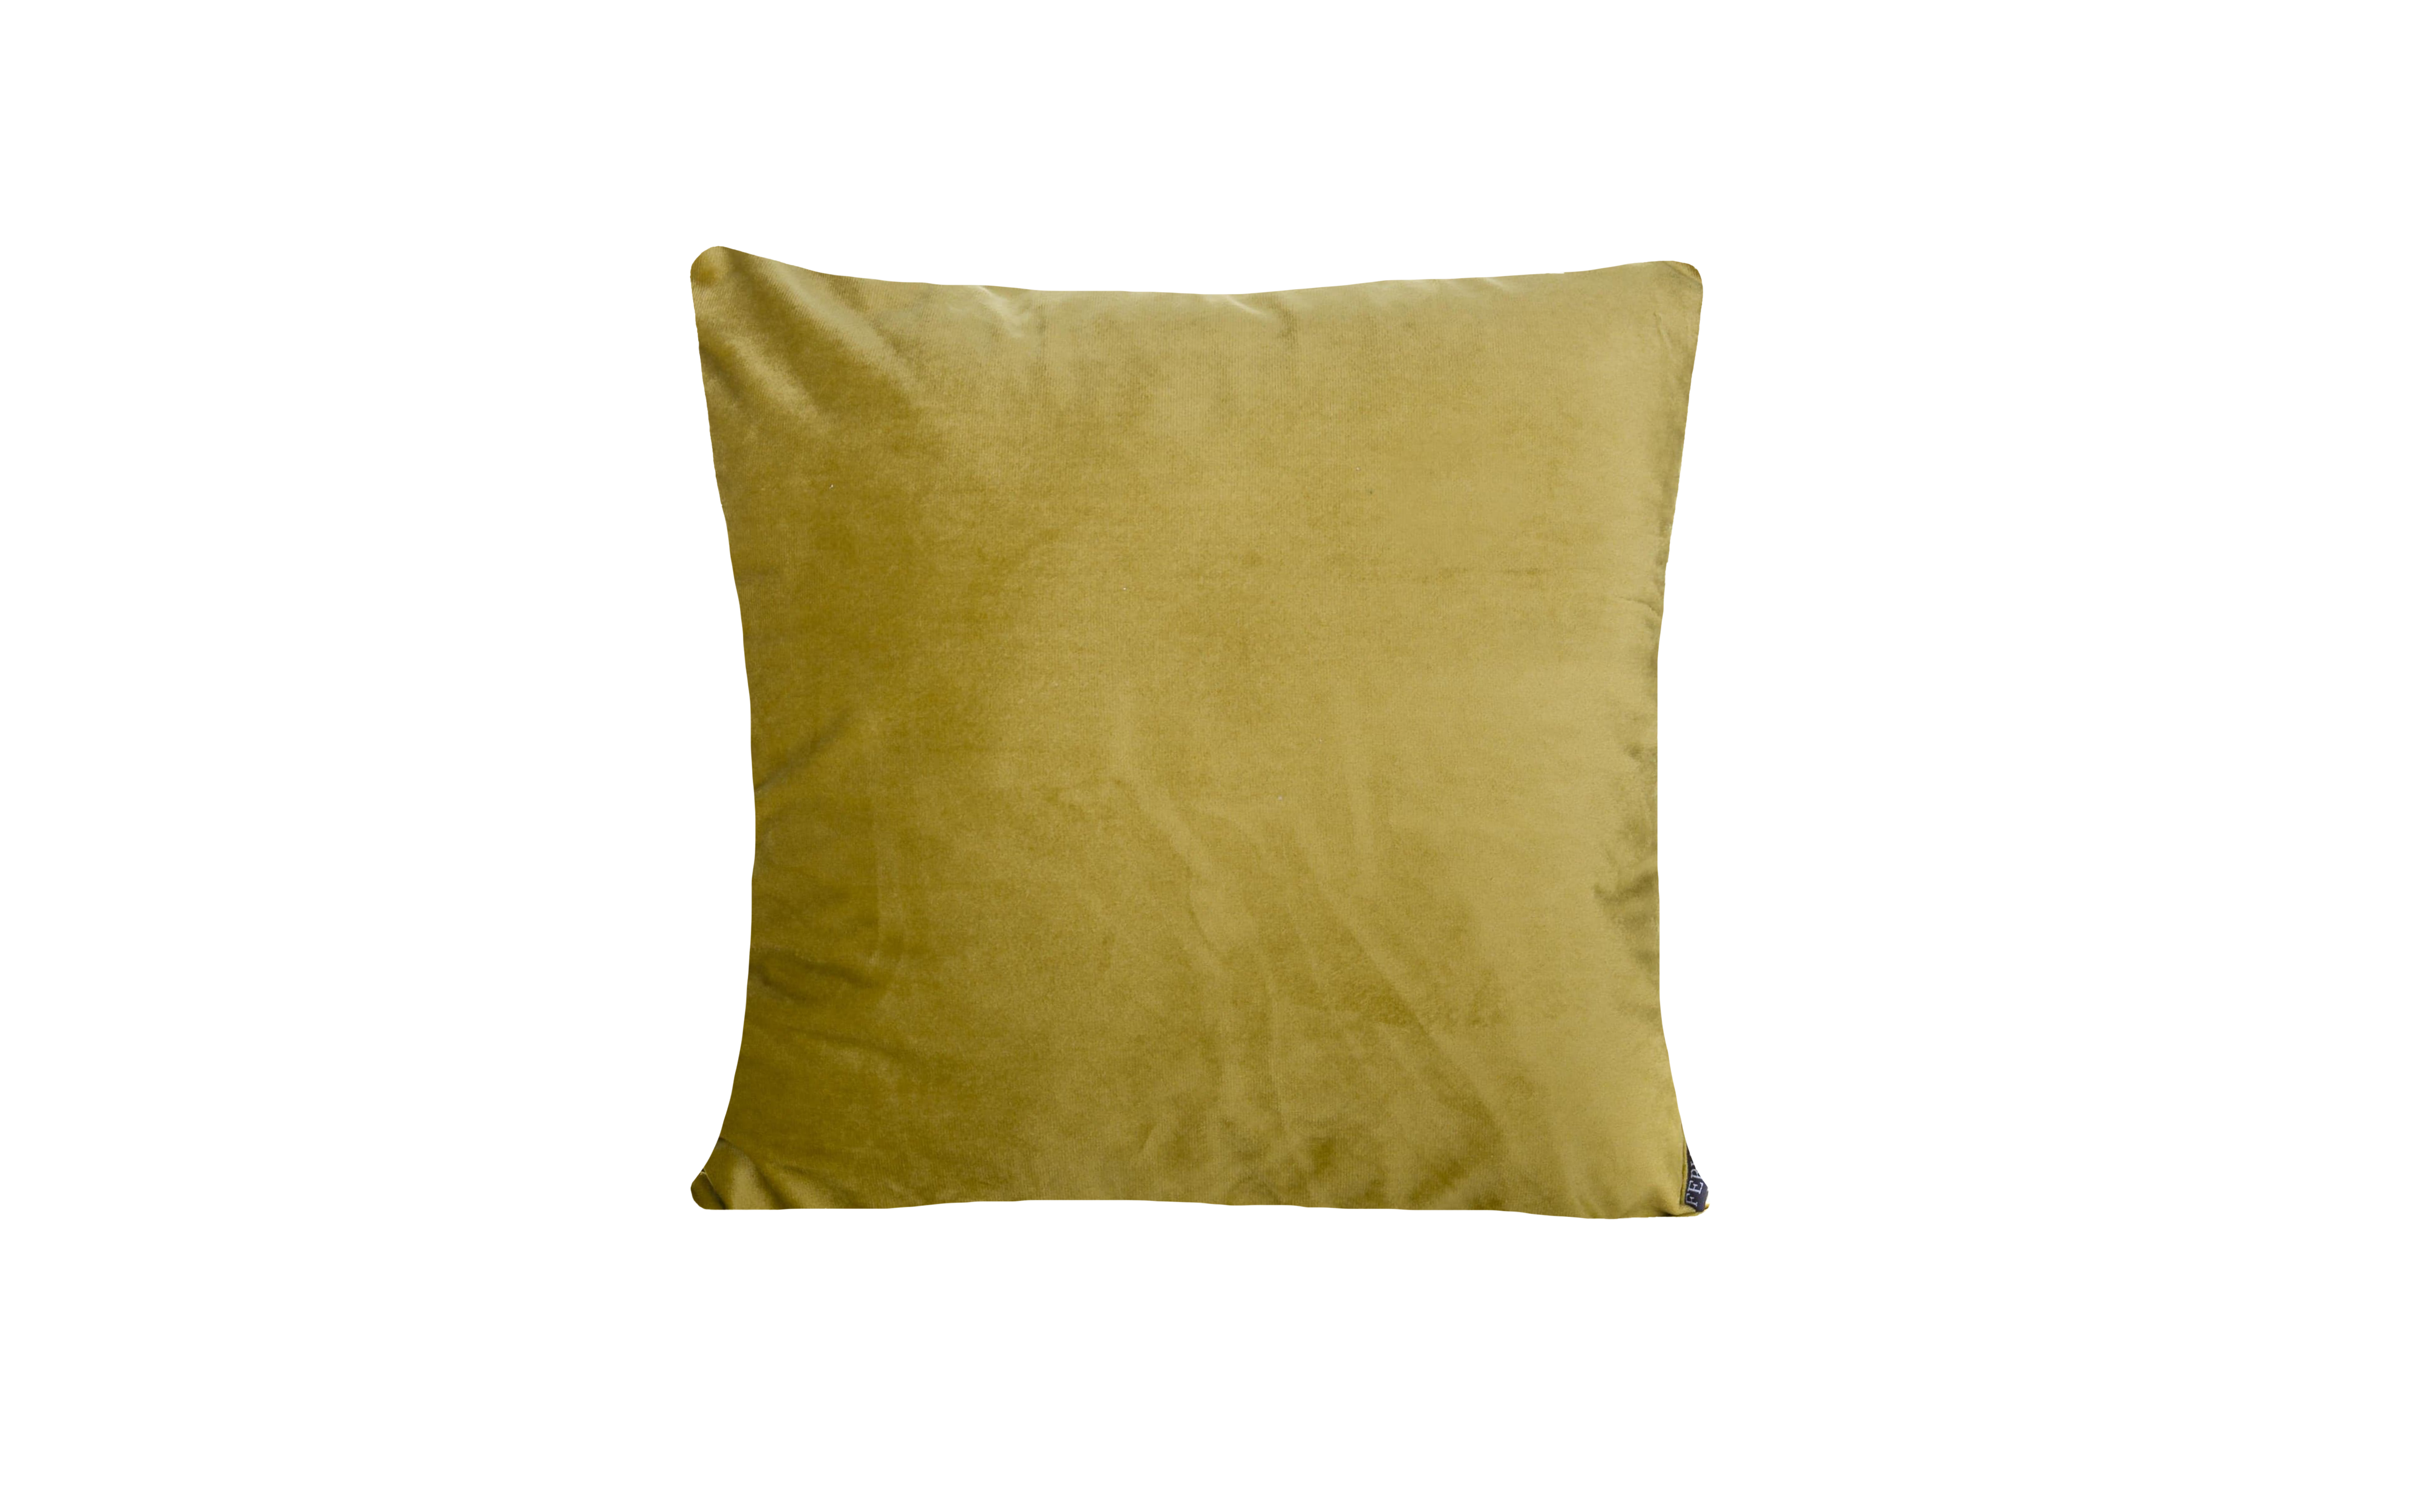 Cushion Velvet Piped Green Fern - Fervor + Hue